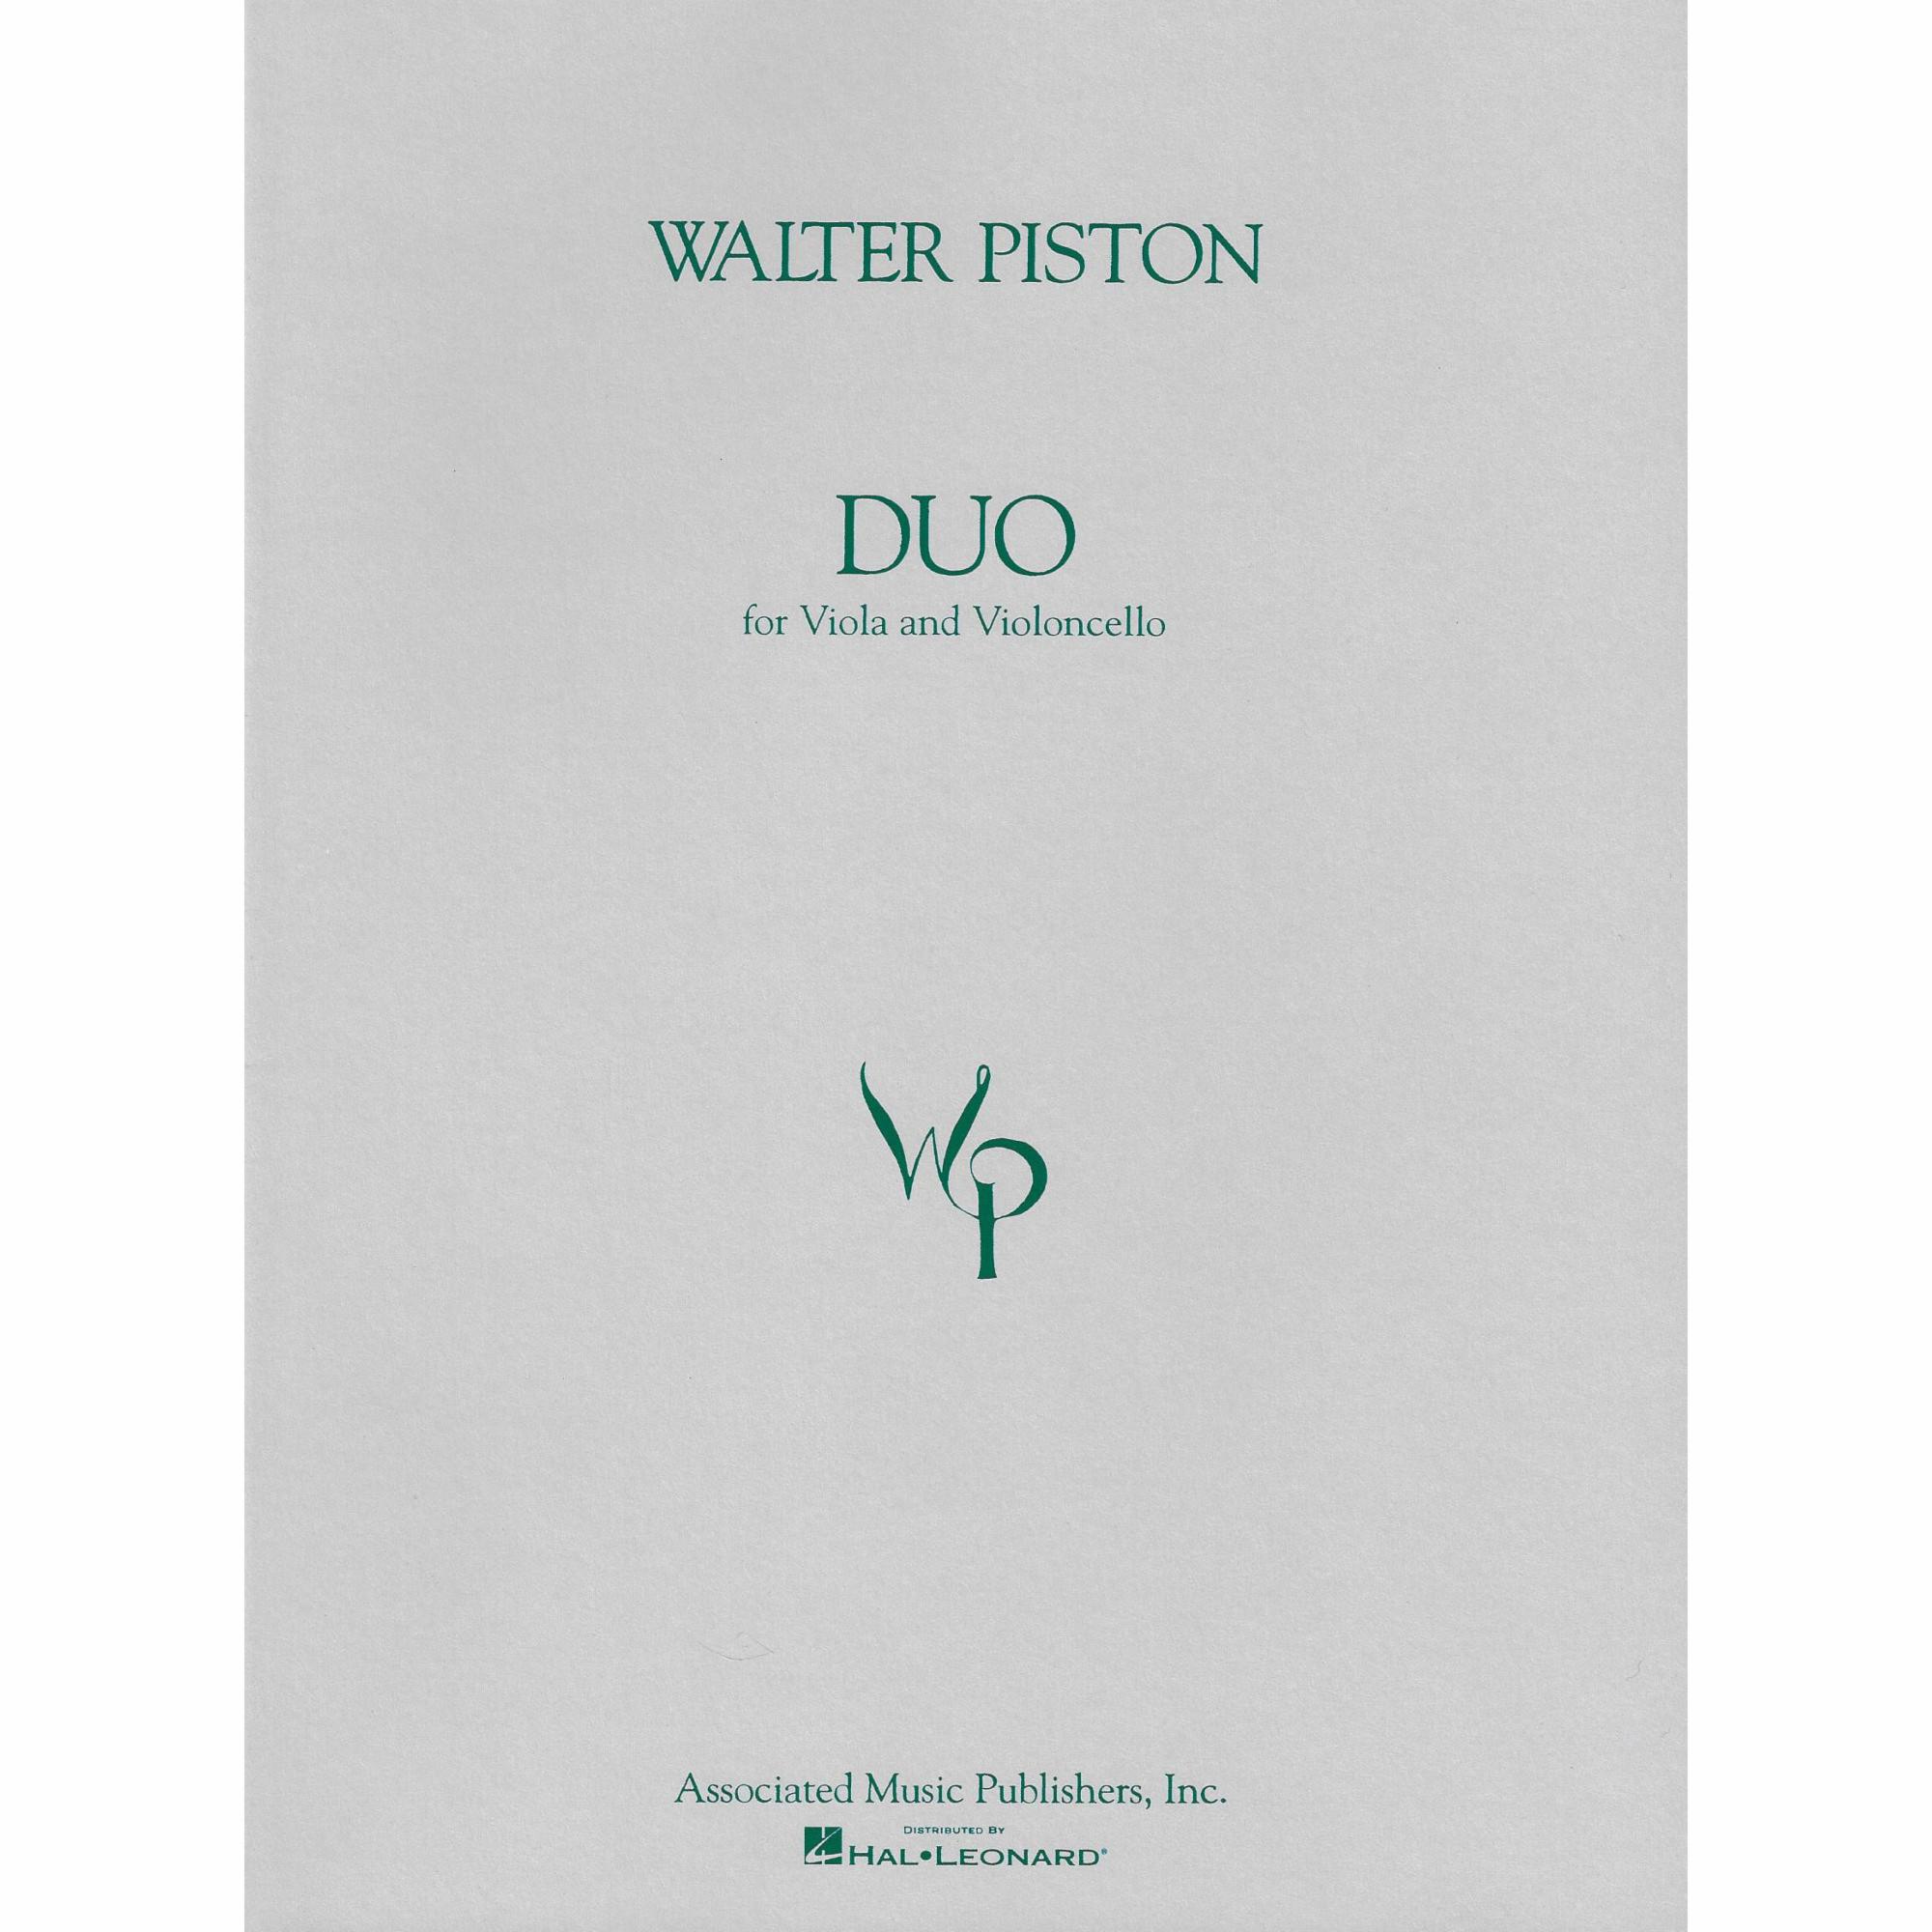 Piston -- Duo for Viola and Violoncello